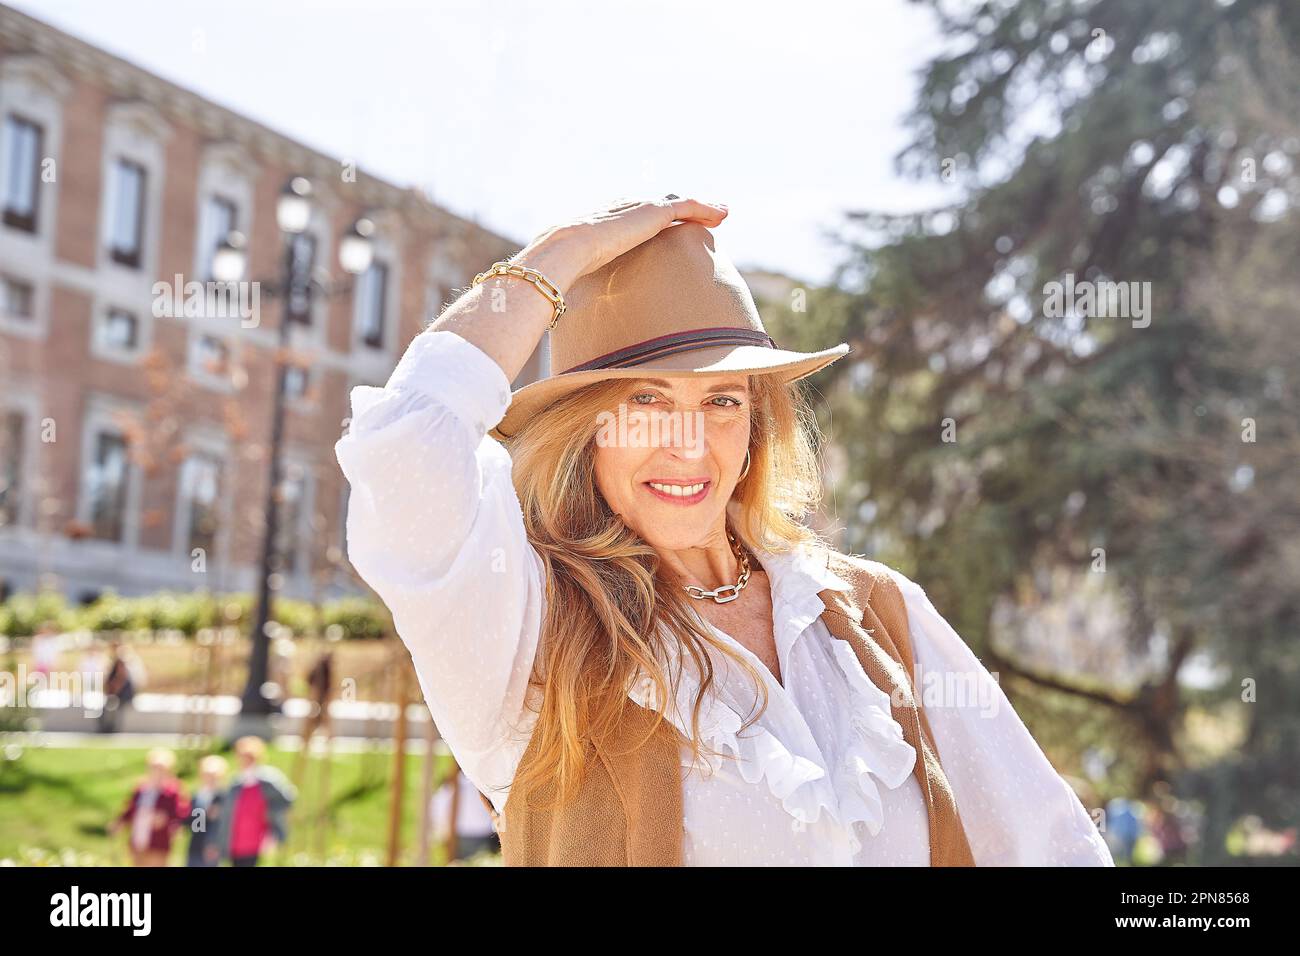 Eine sorgenfreie blonde Frau mit langem Haar und einem stilvollen Hut blickt direkt in die Kamera und genießt die friedliche Umgebung eines Parks. Stockfoto